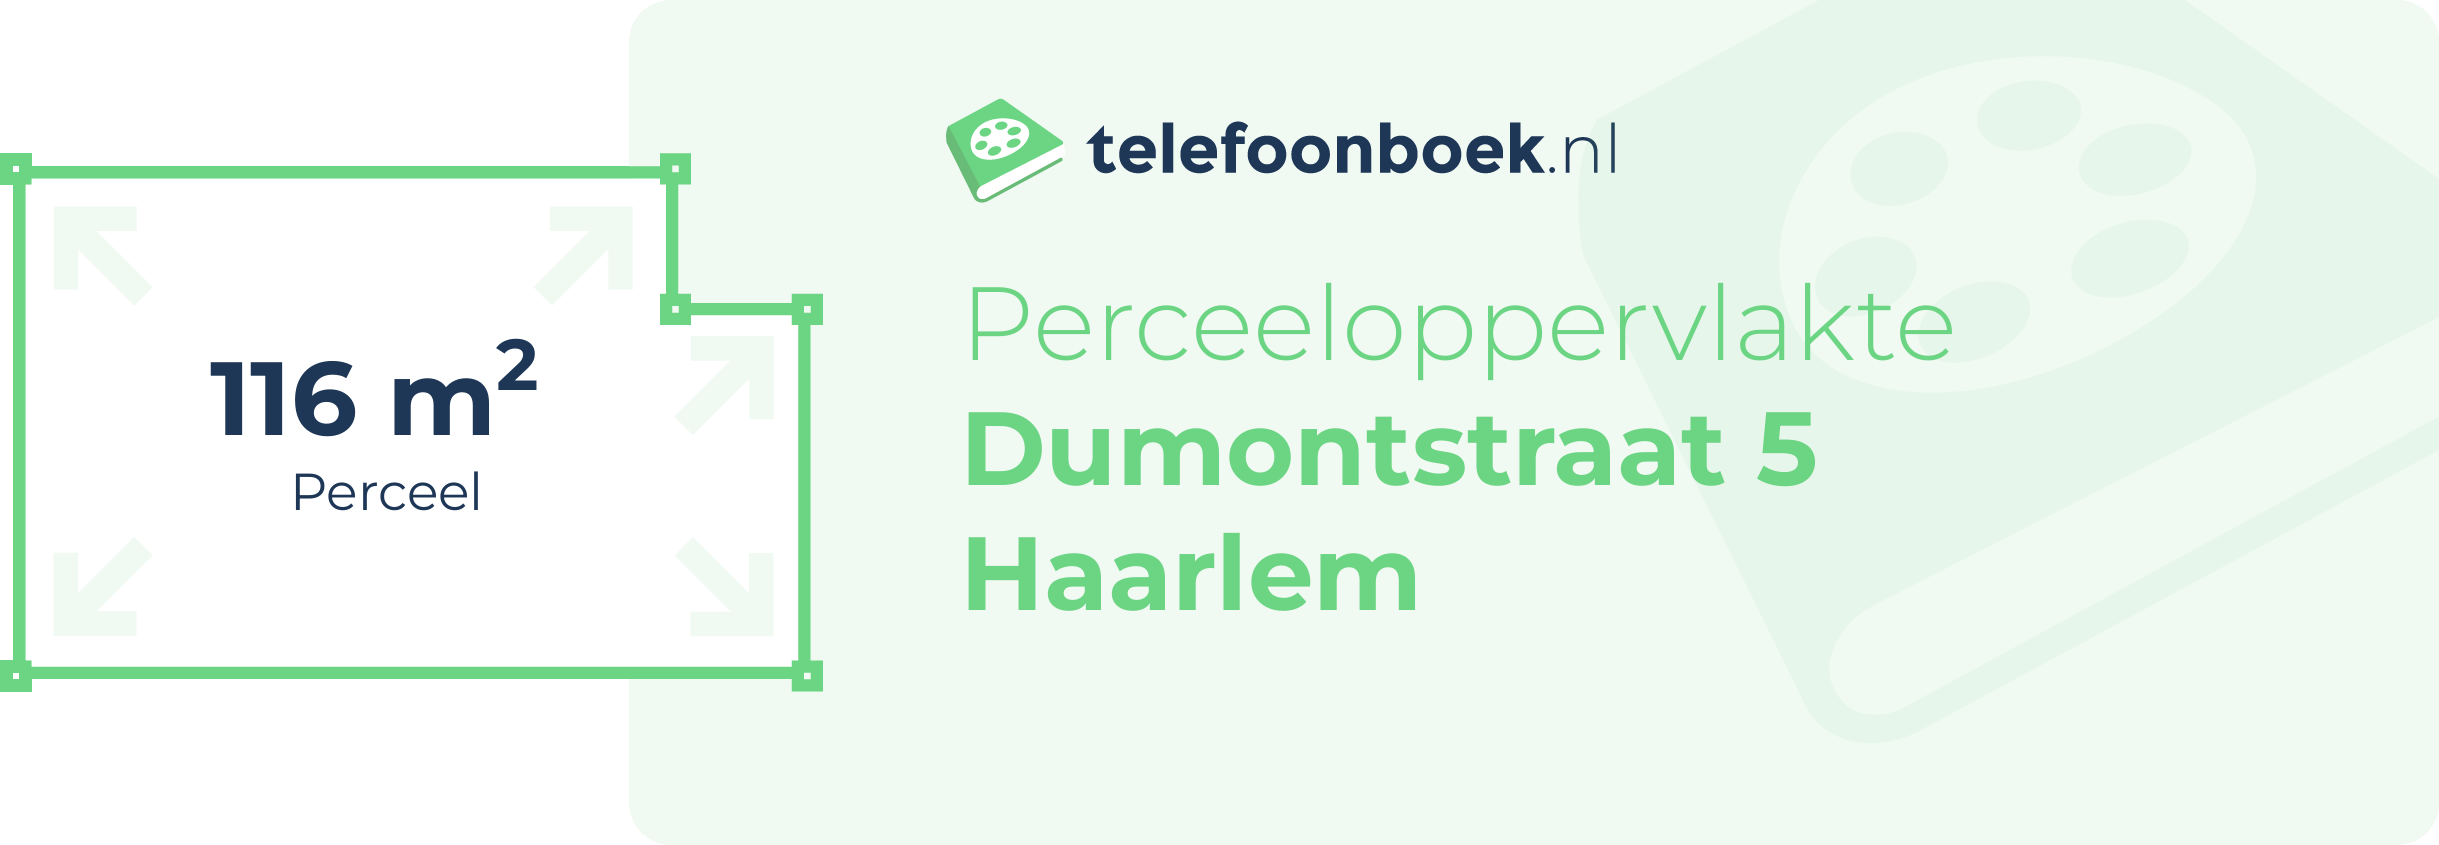 Perceeloppervlakte Dumontstraat 5 Haarlem